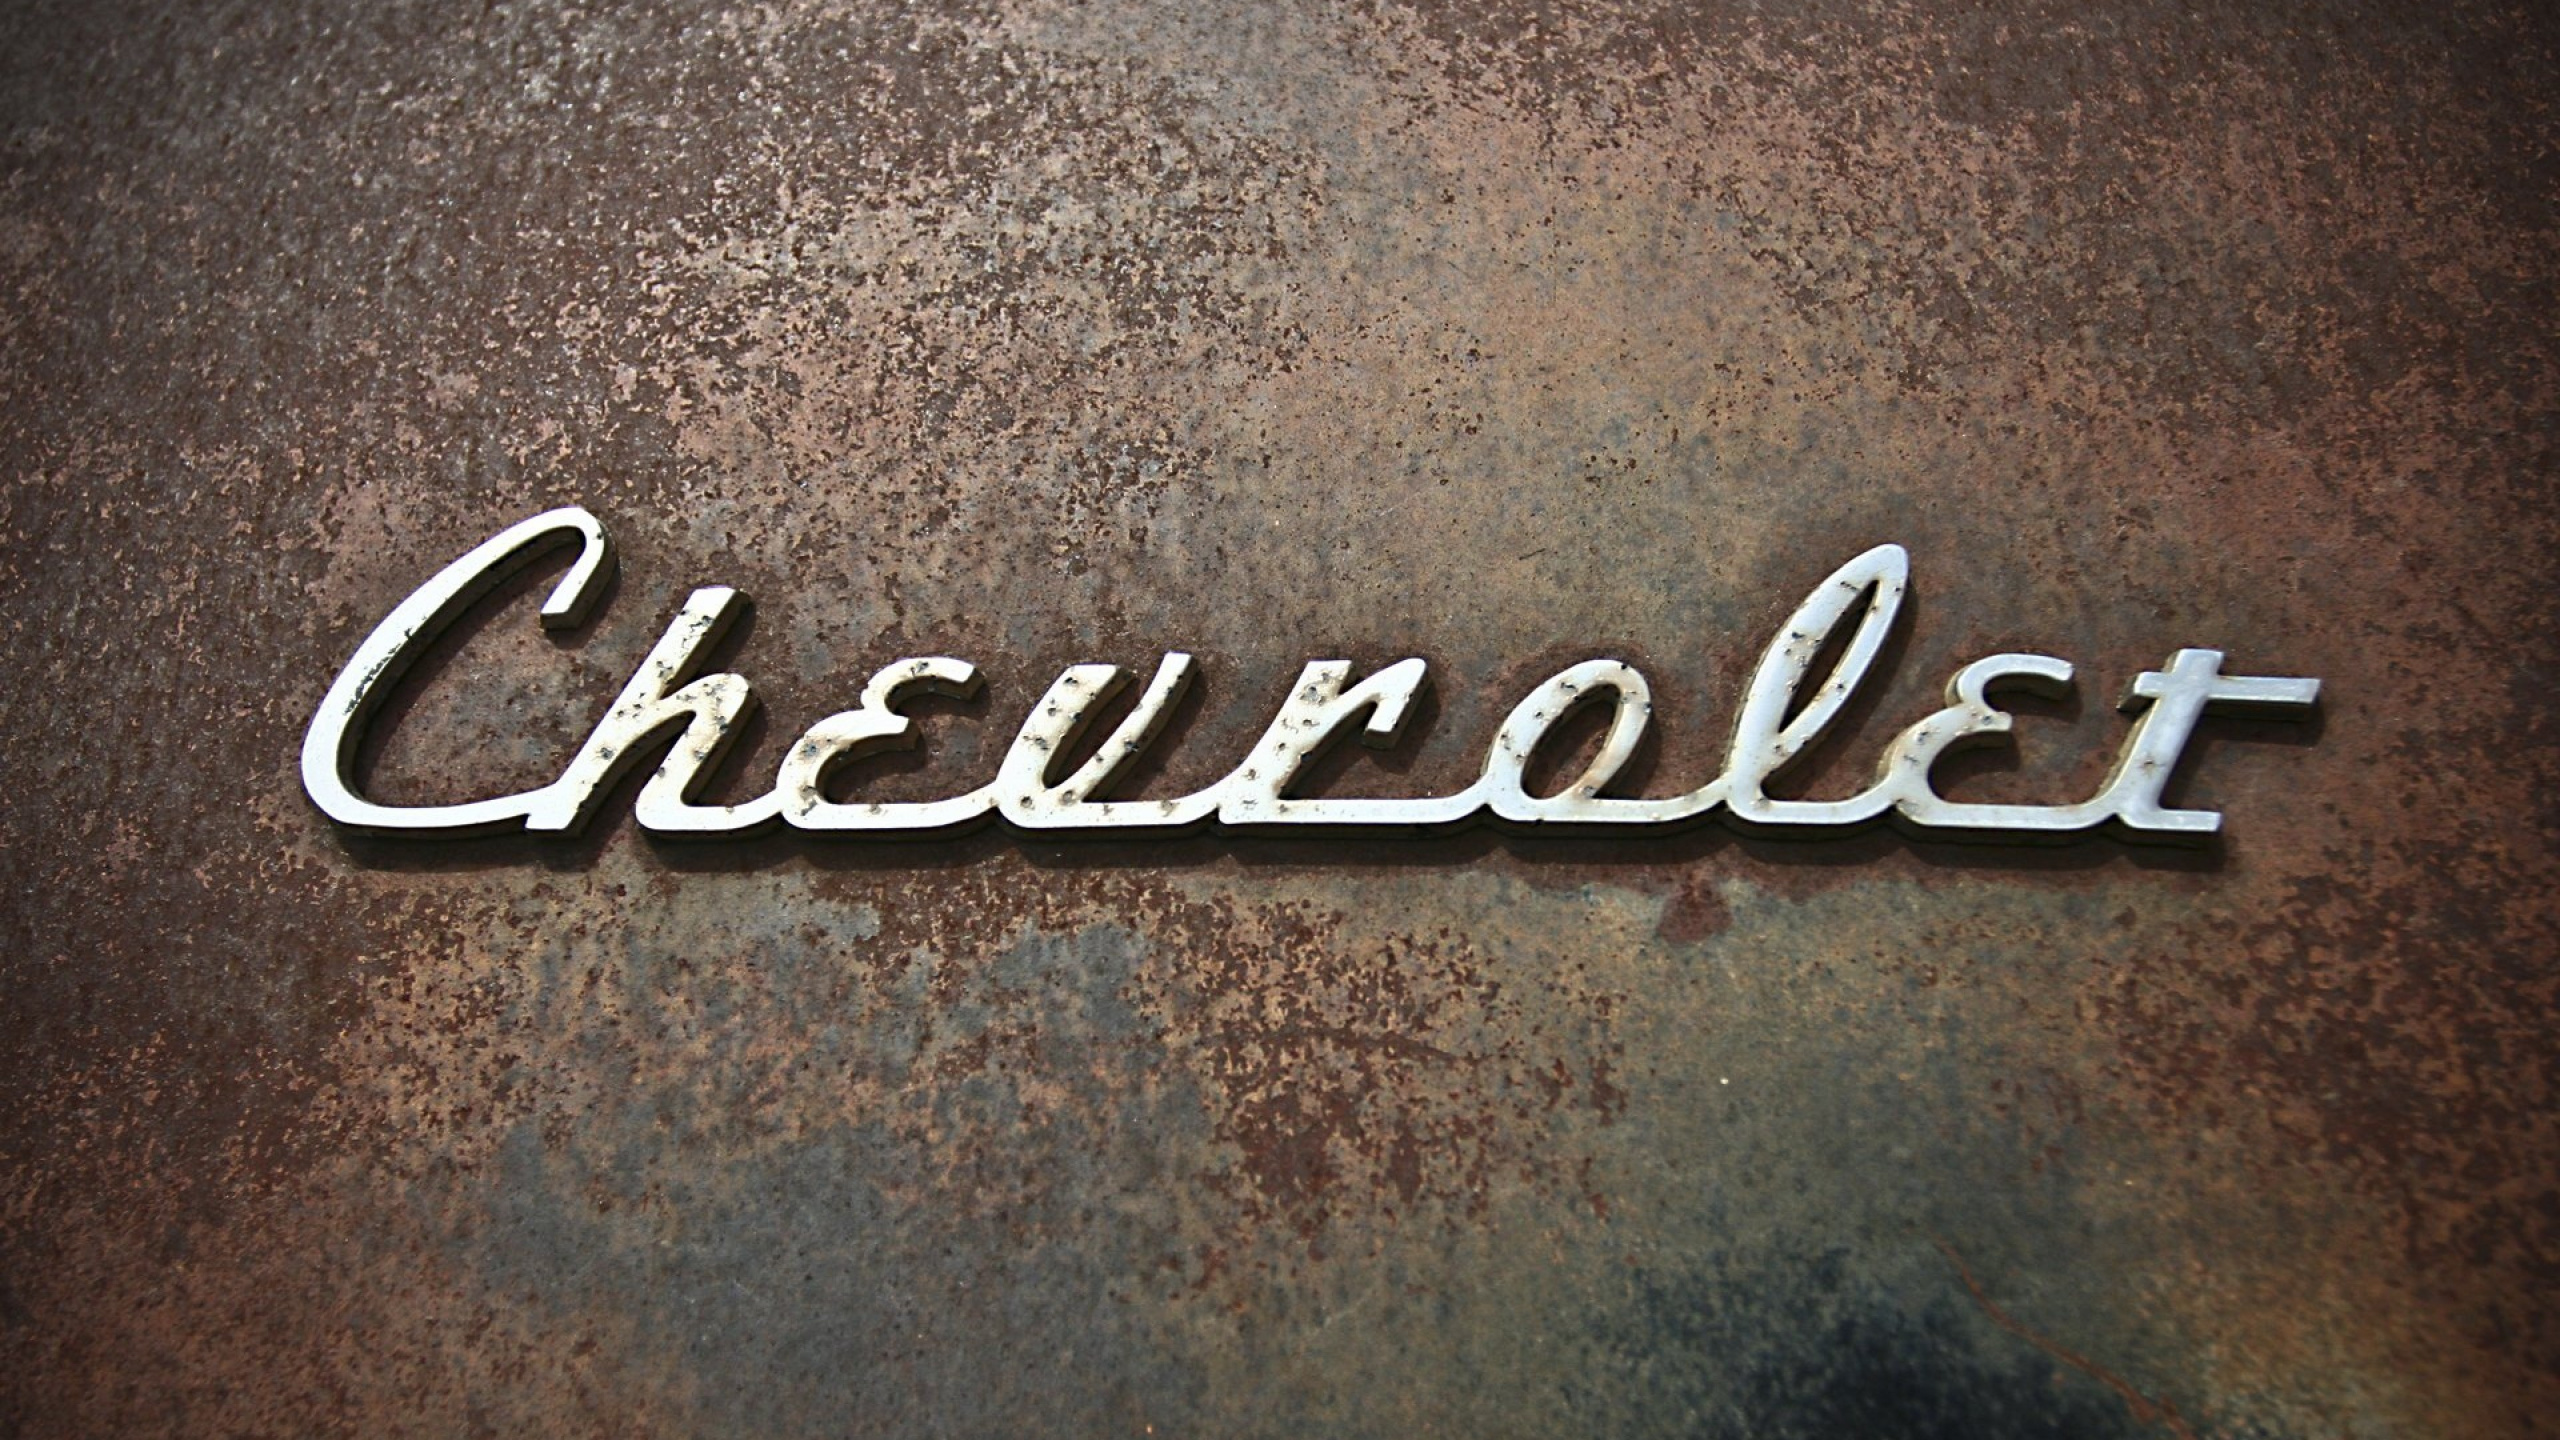 Chevrolet, Firmenzeichen, Text, Brand, Schriftart. Wallpaper in 2560x1440 Resolution